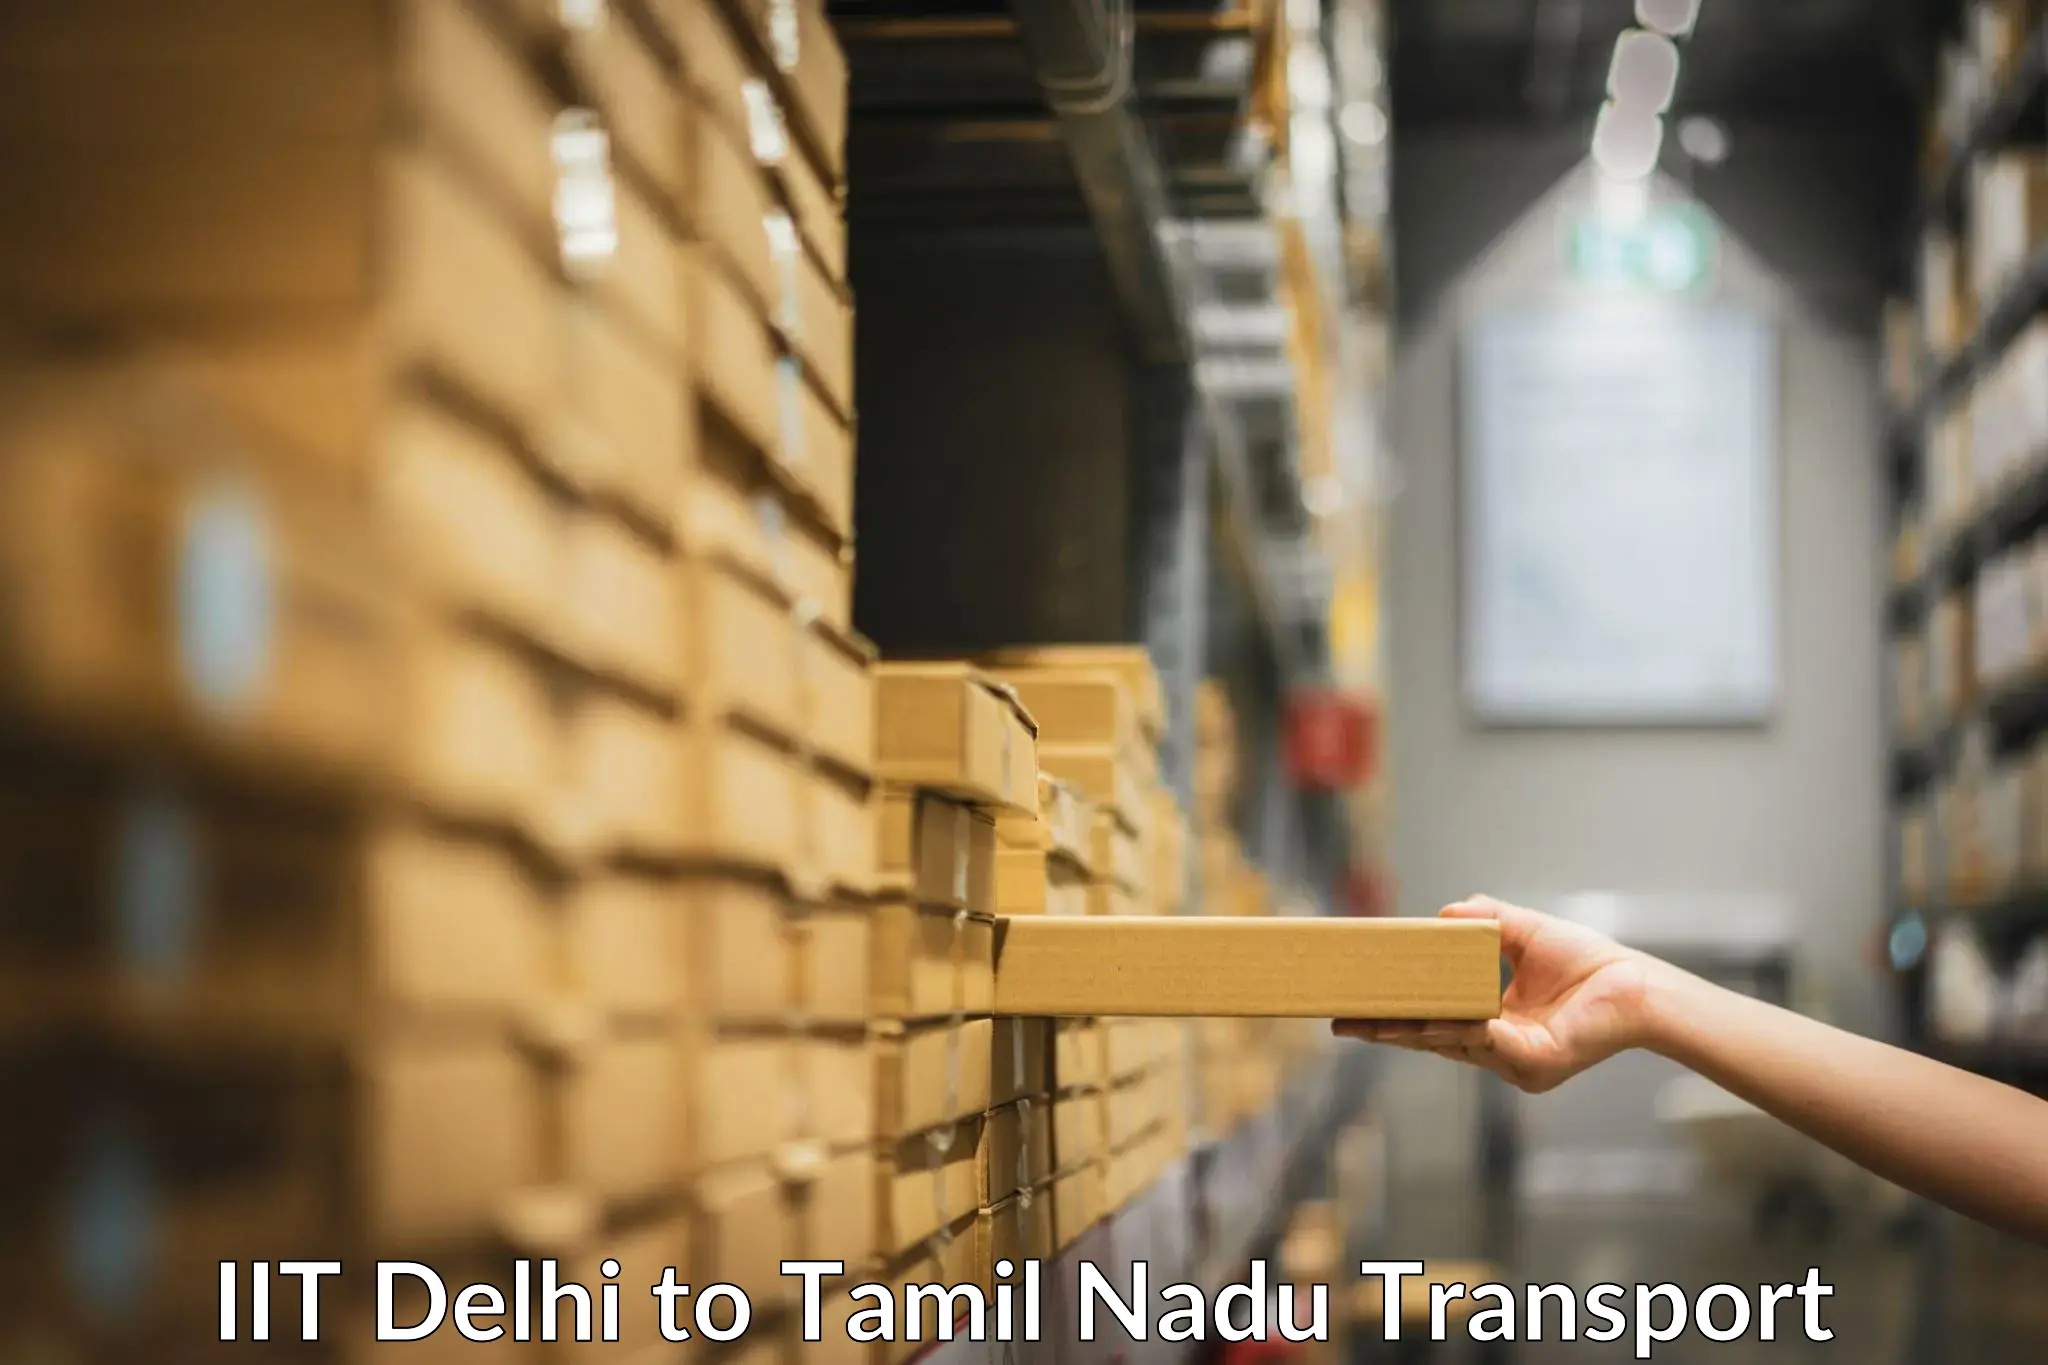 Vehicle parcel service IIT Delhi to Tirunelveli